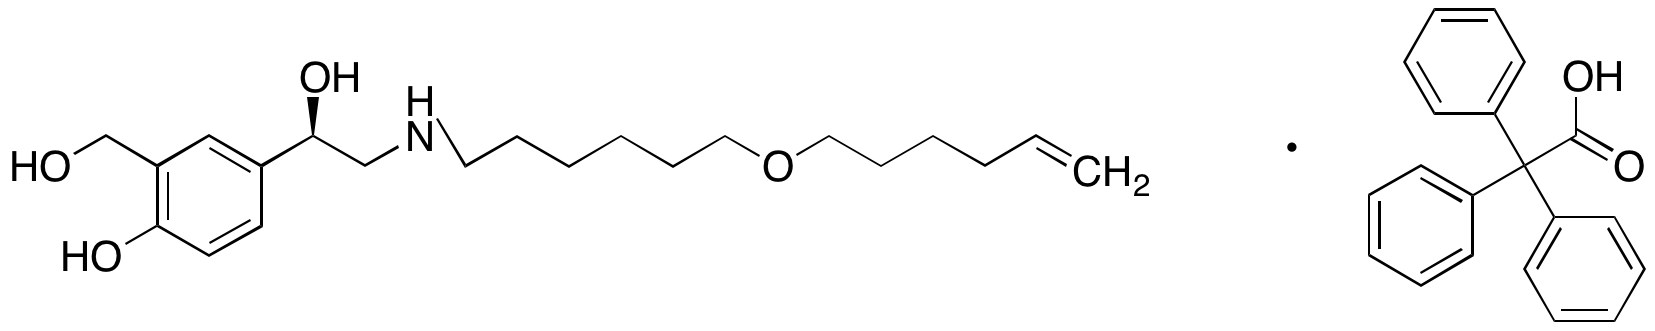 (R)-4-(2-((6-(Hex-5-en-1-yloxy)hexyl)amino)-1-hydroxyethyl)-2-(hydroxymethyl)phenol 2,2,2-Triphenylacetate